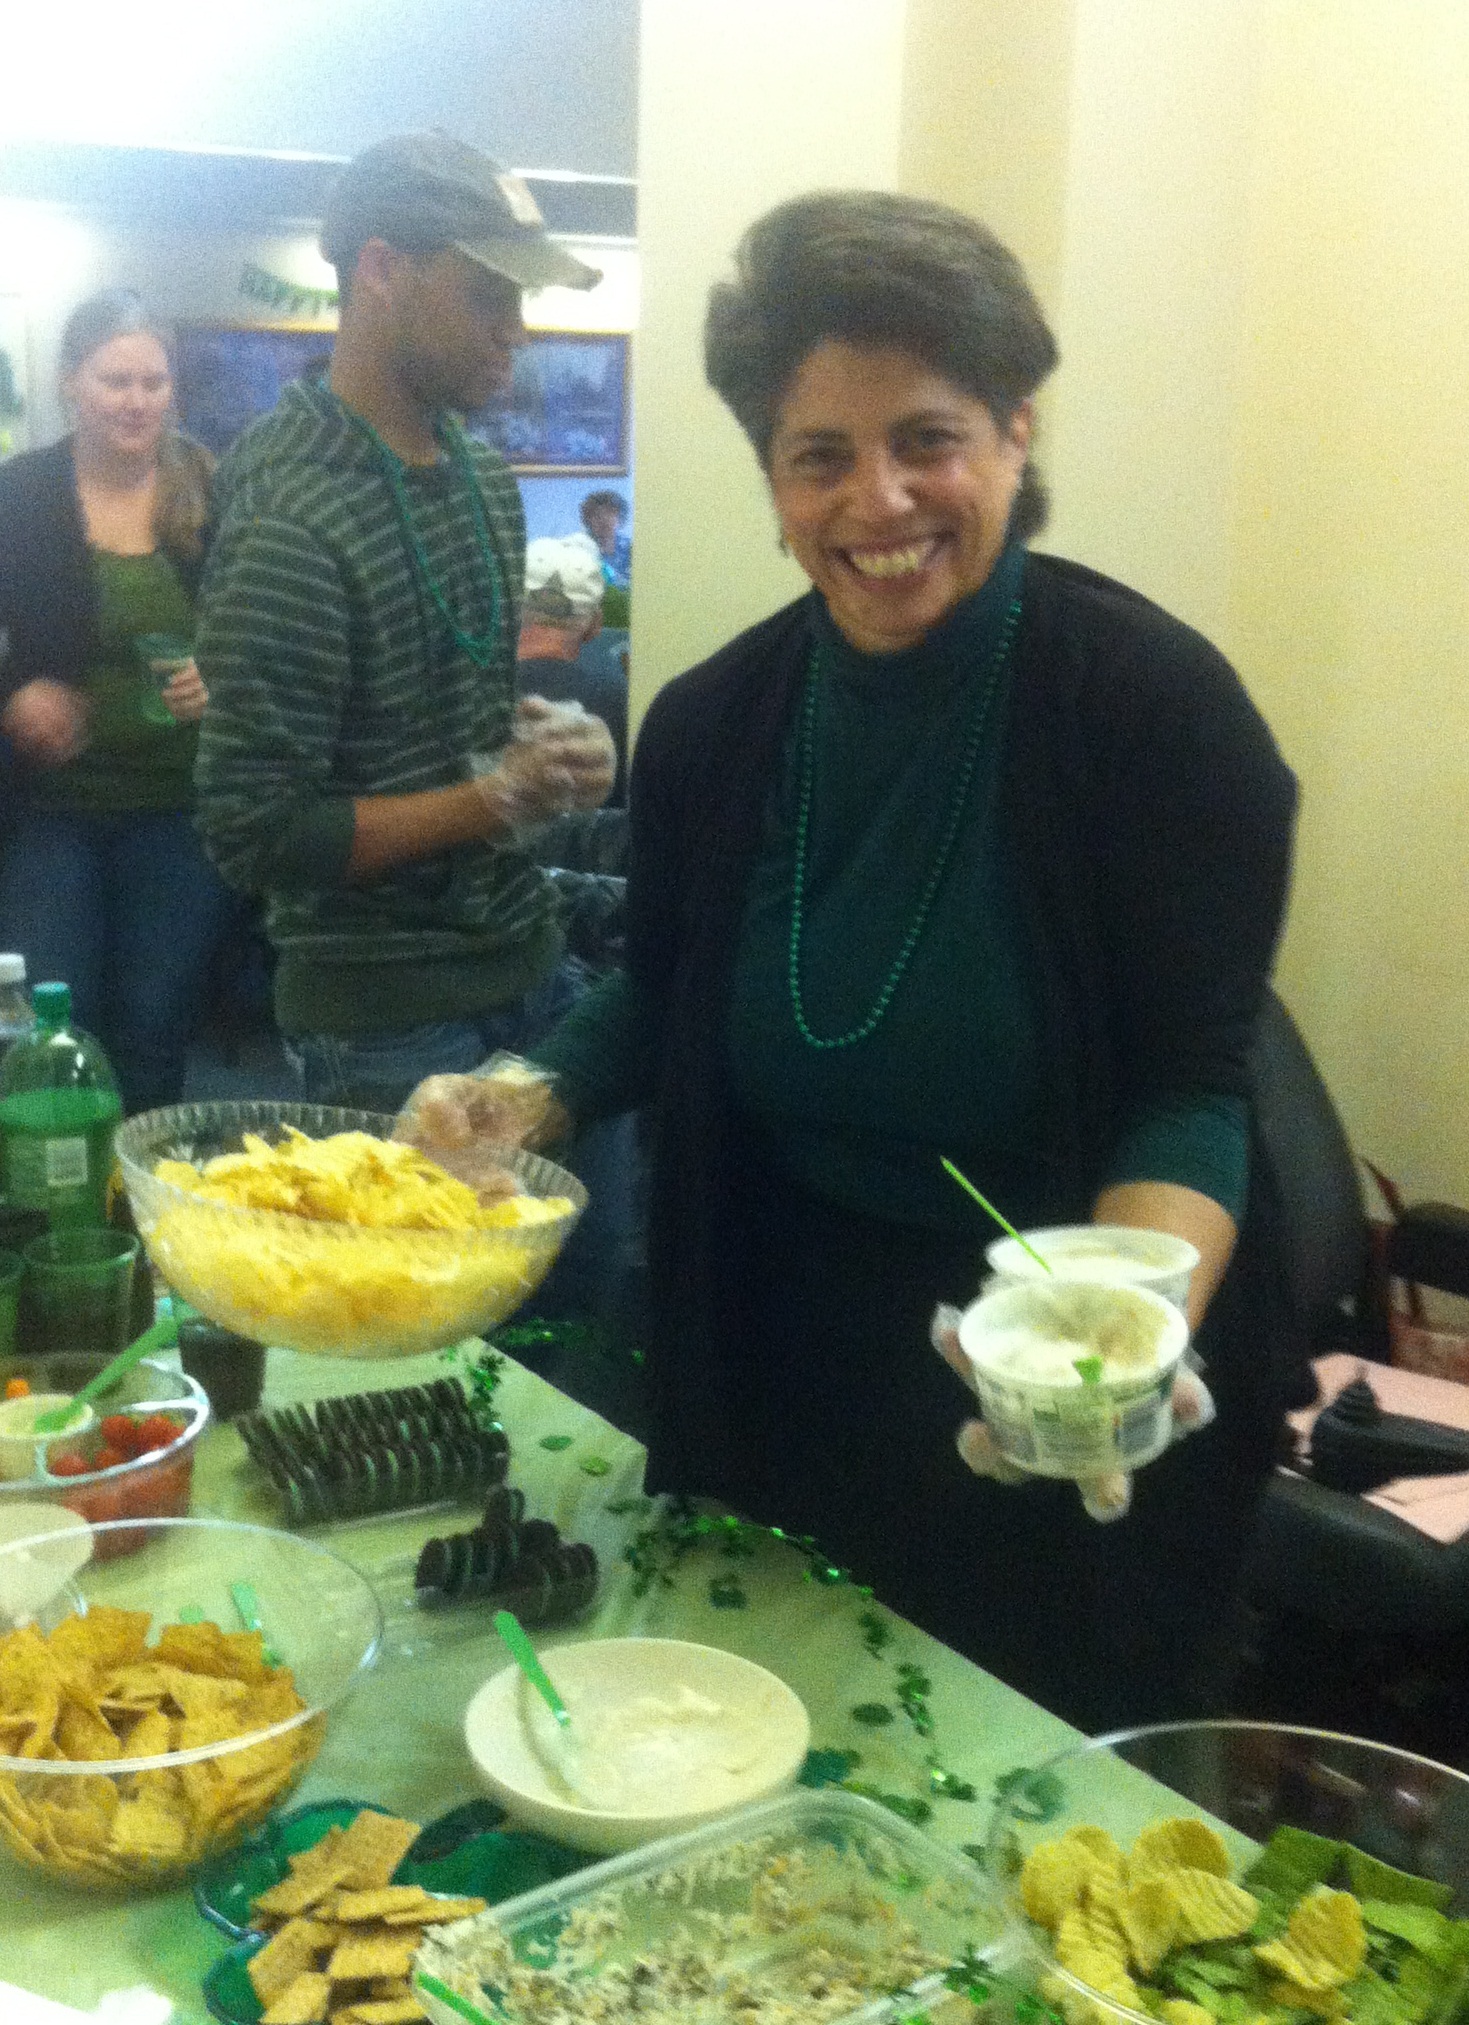 Delta Lambda chapter Secretary Alida Loinaz at the St. Patrick’s Day party.